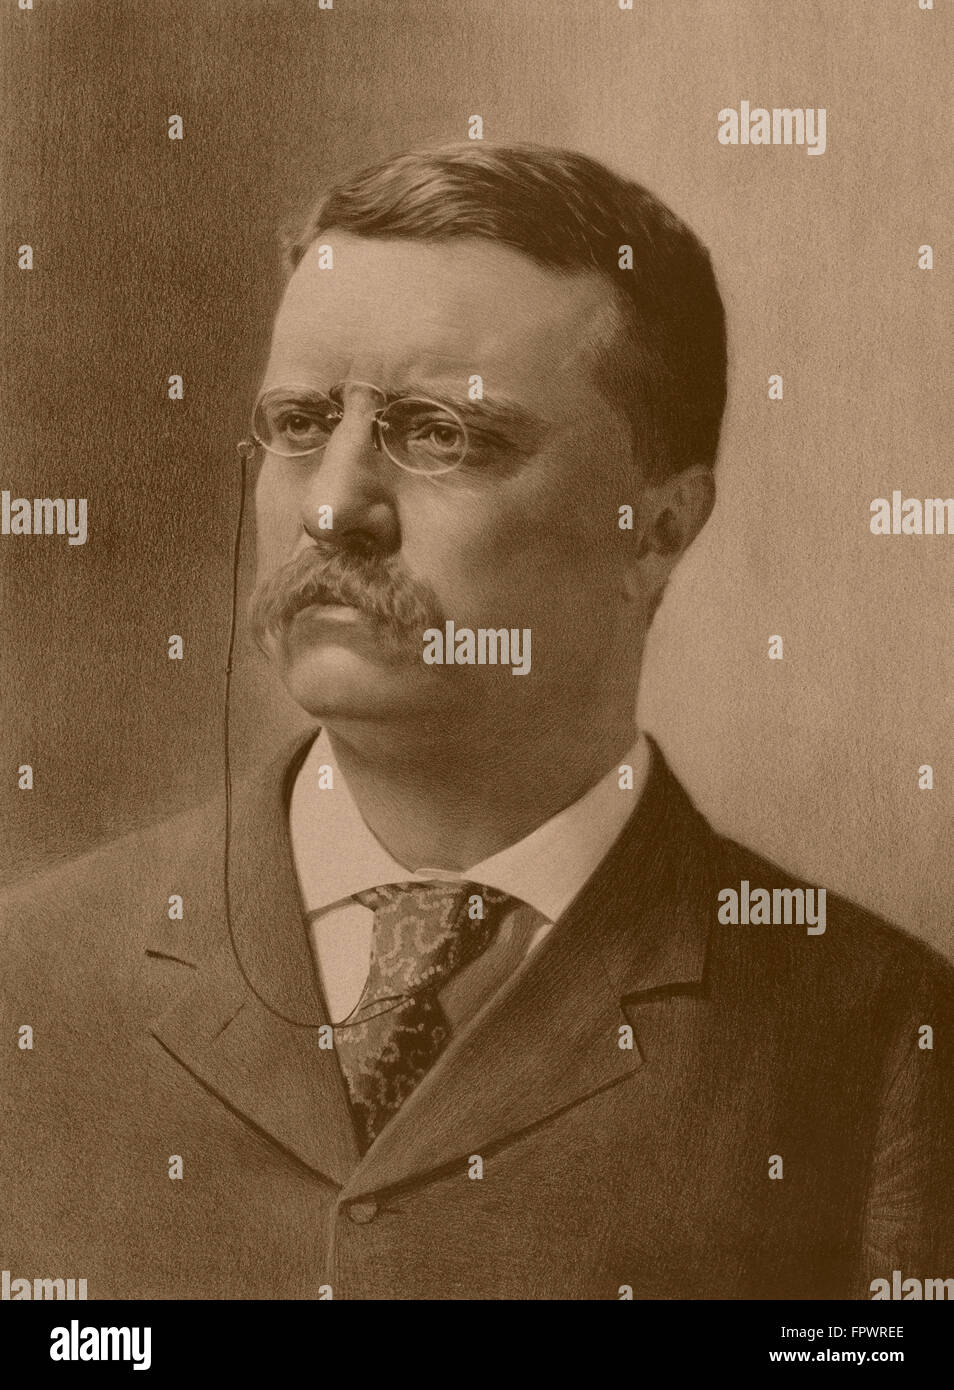 Vintage American History Print von einem jüngeren Präsident Theodore Roosevelt nach rechts. Stockfoto